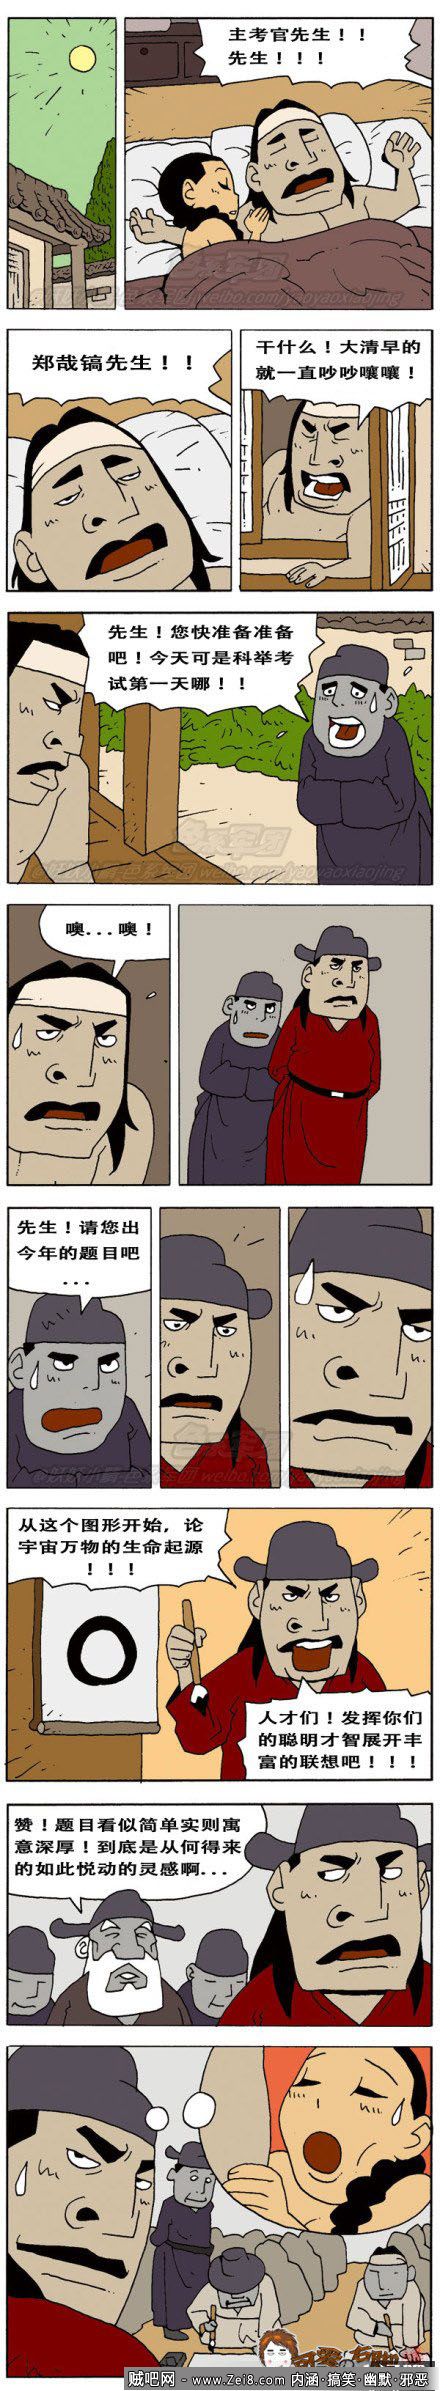 [韩国古代内涵漫画]：出题的灵感